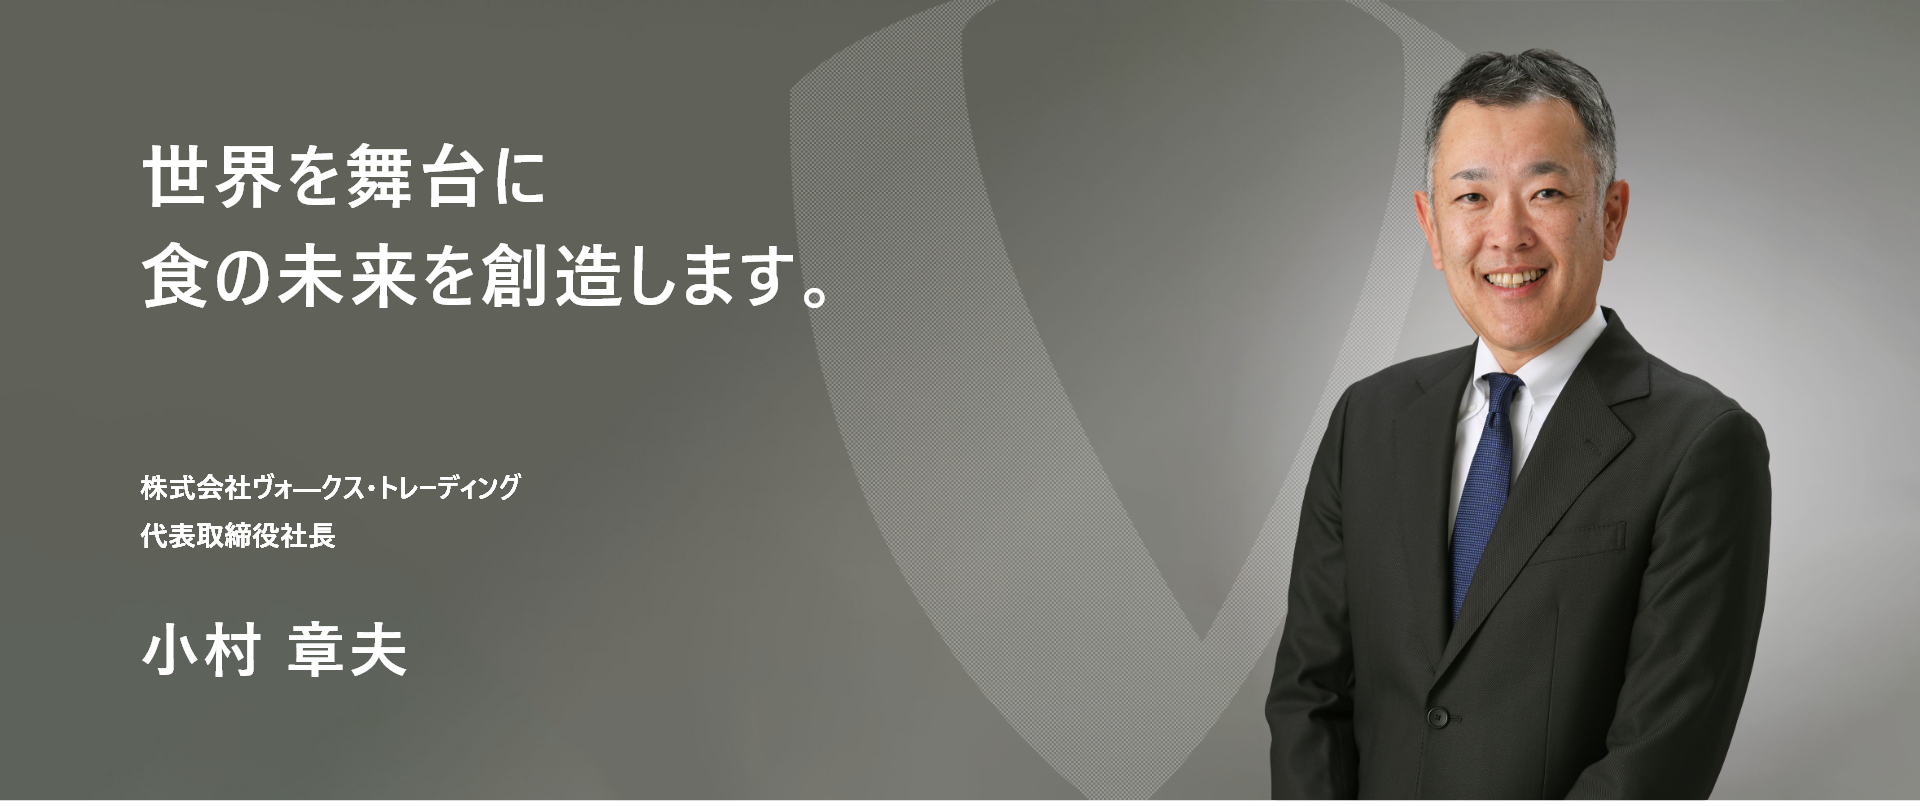 株式会社 ヴォークス・トレーディング 代表取締役 小村 章夫